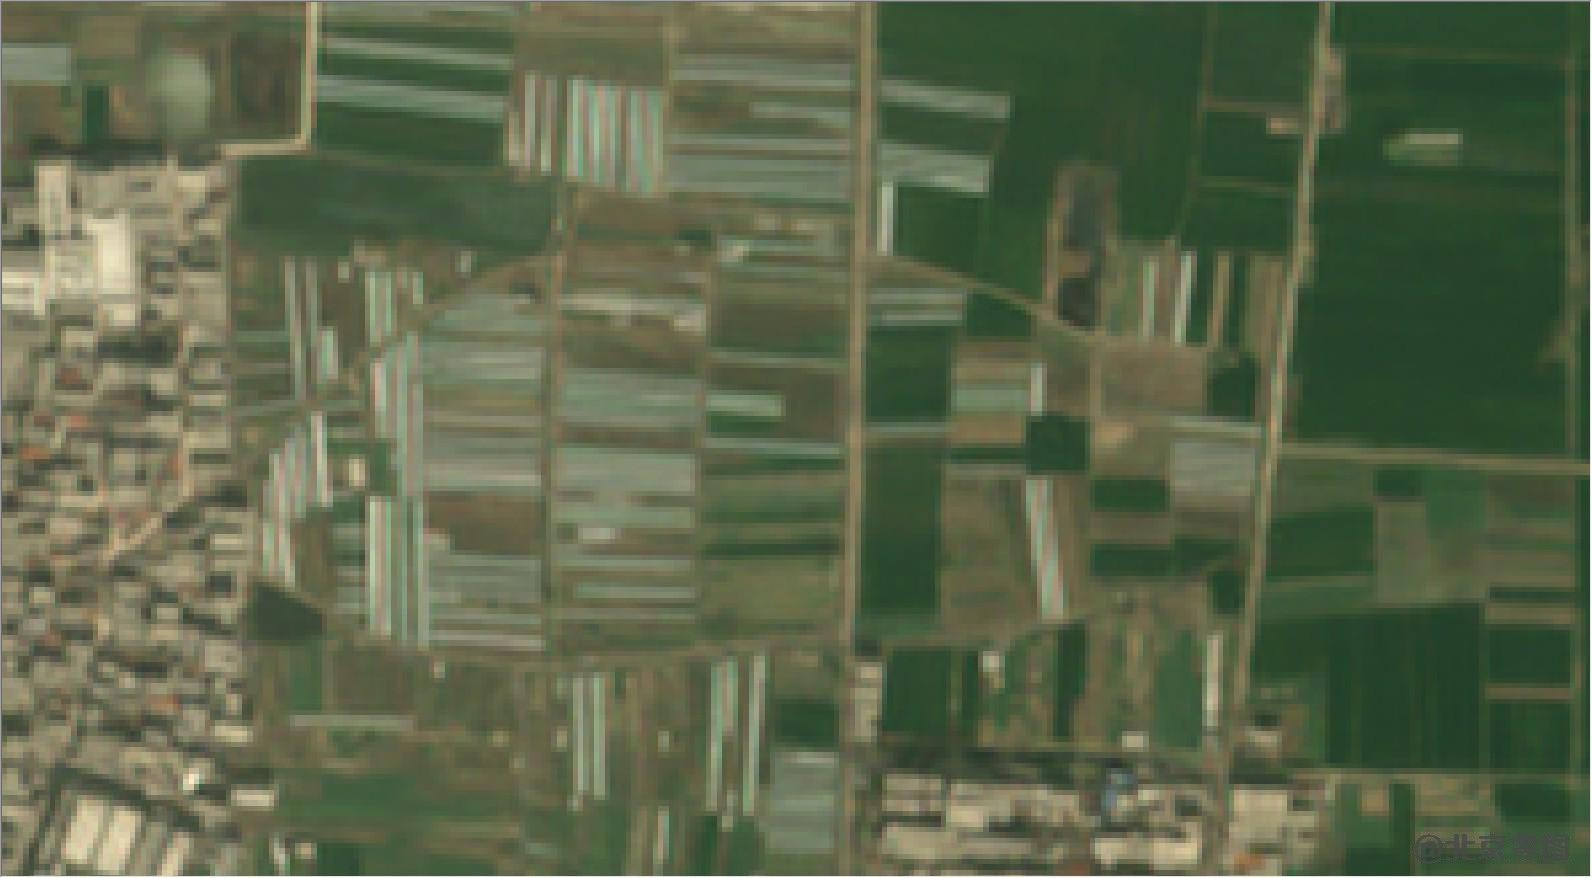 pleiades卫星影像原始数据-2米多光谱影像